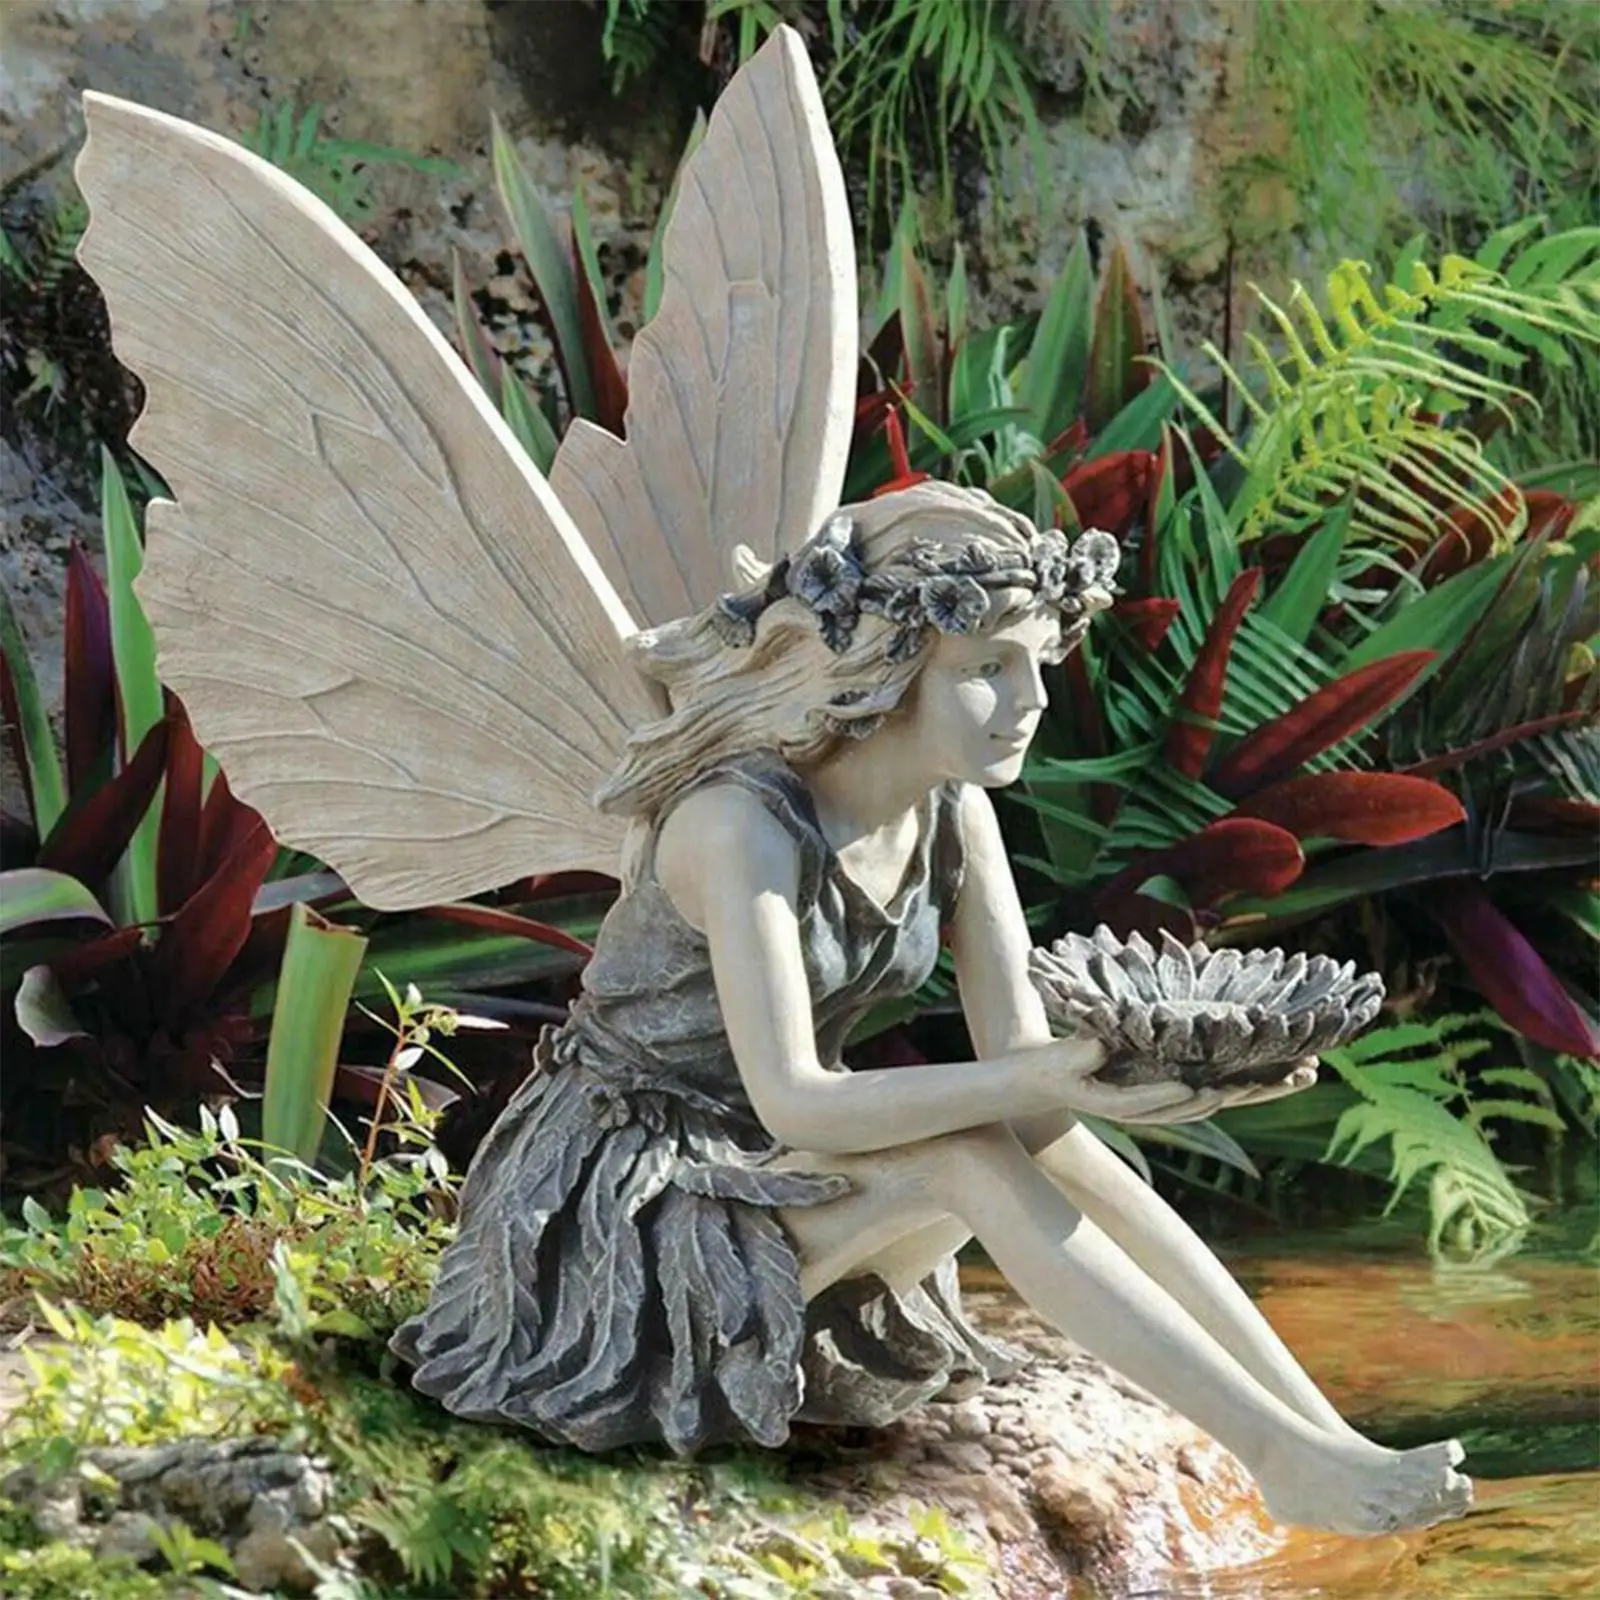 

Flower Fairy Statue Wires Fairy Garden Miniature Sculpture Mythical Garden Dandelion Figurine Fairies Pixies Yard Decoration